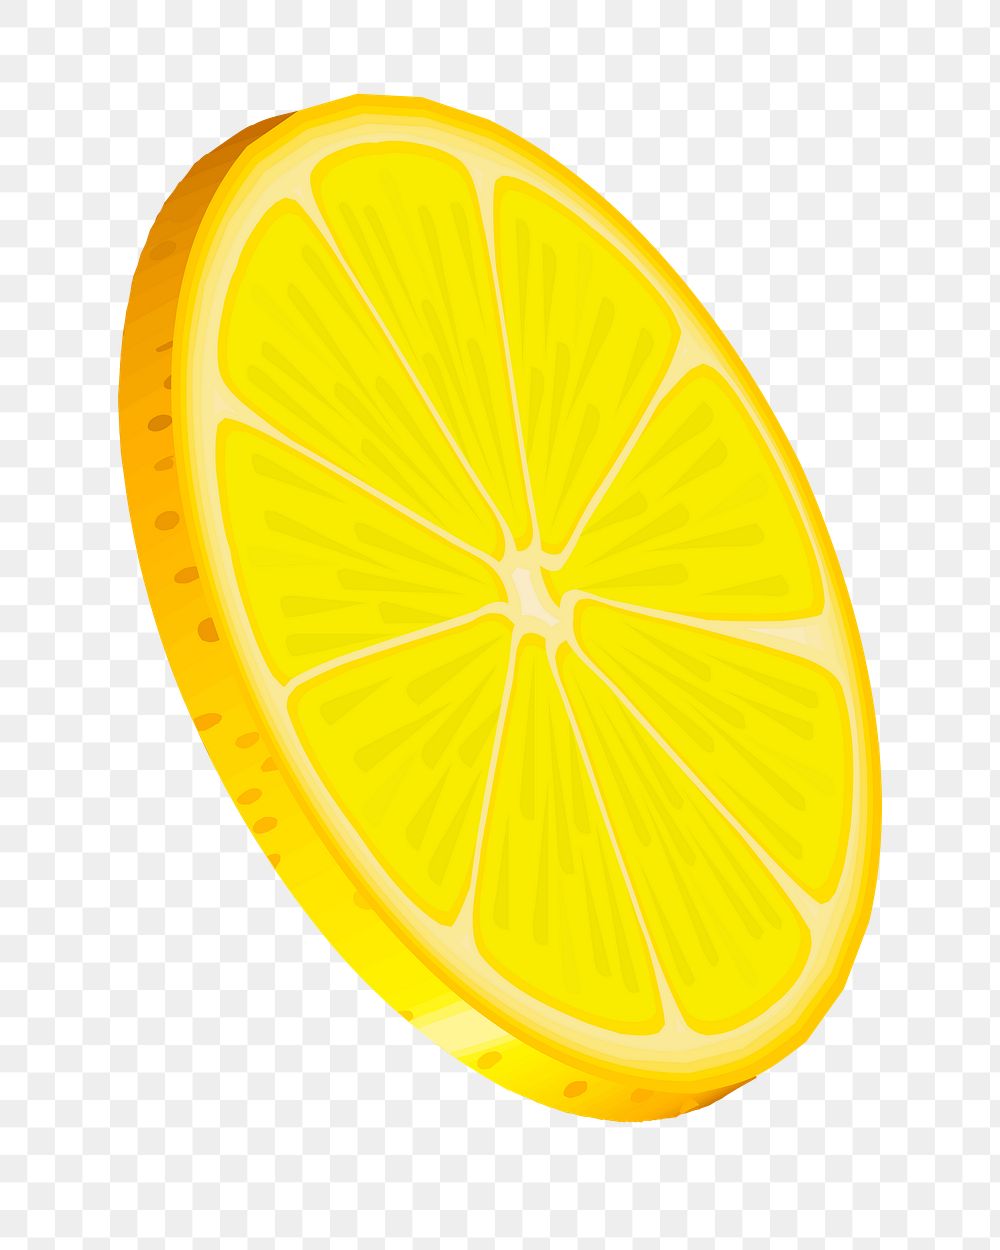 Lemon png illustration, transparent background. Free public domain CC0 image.